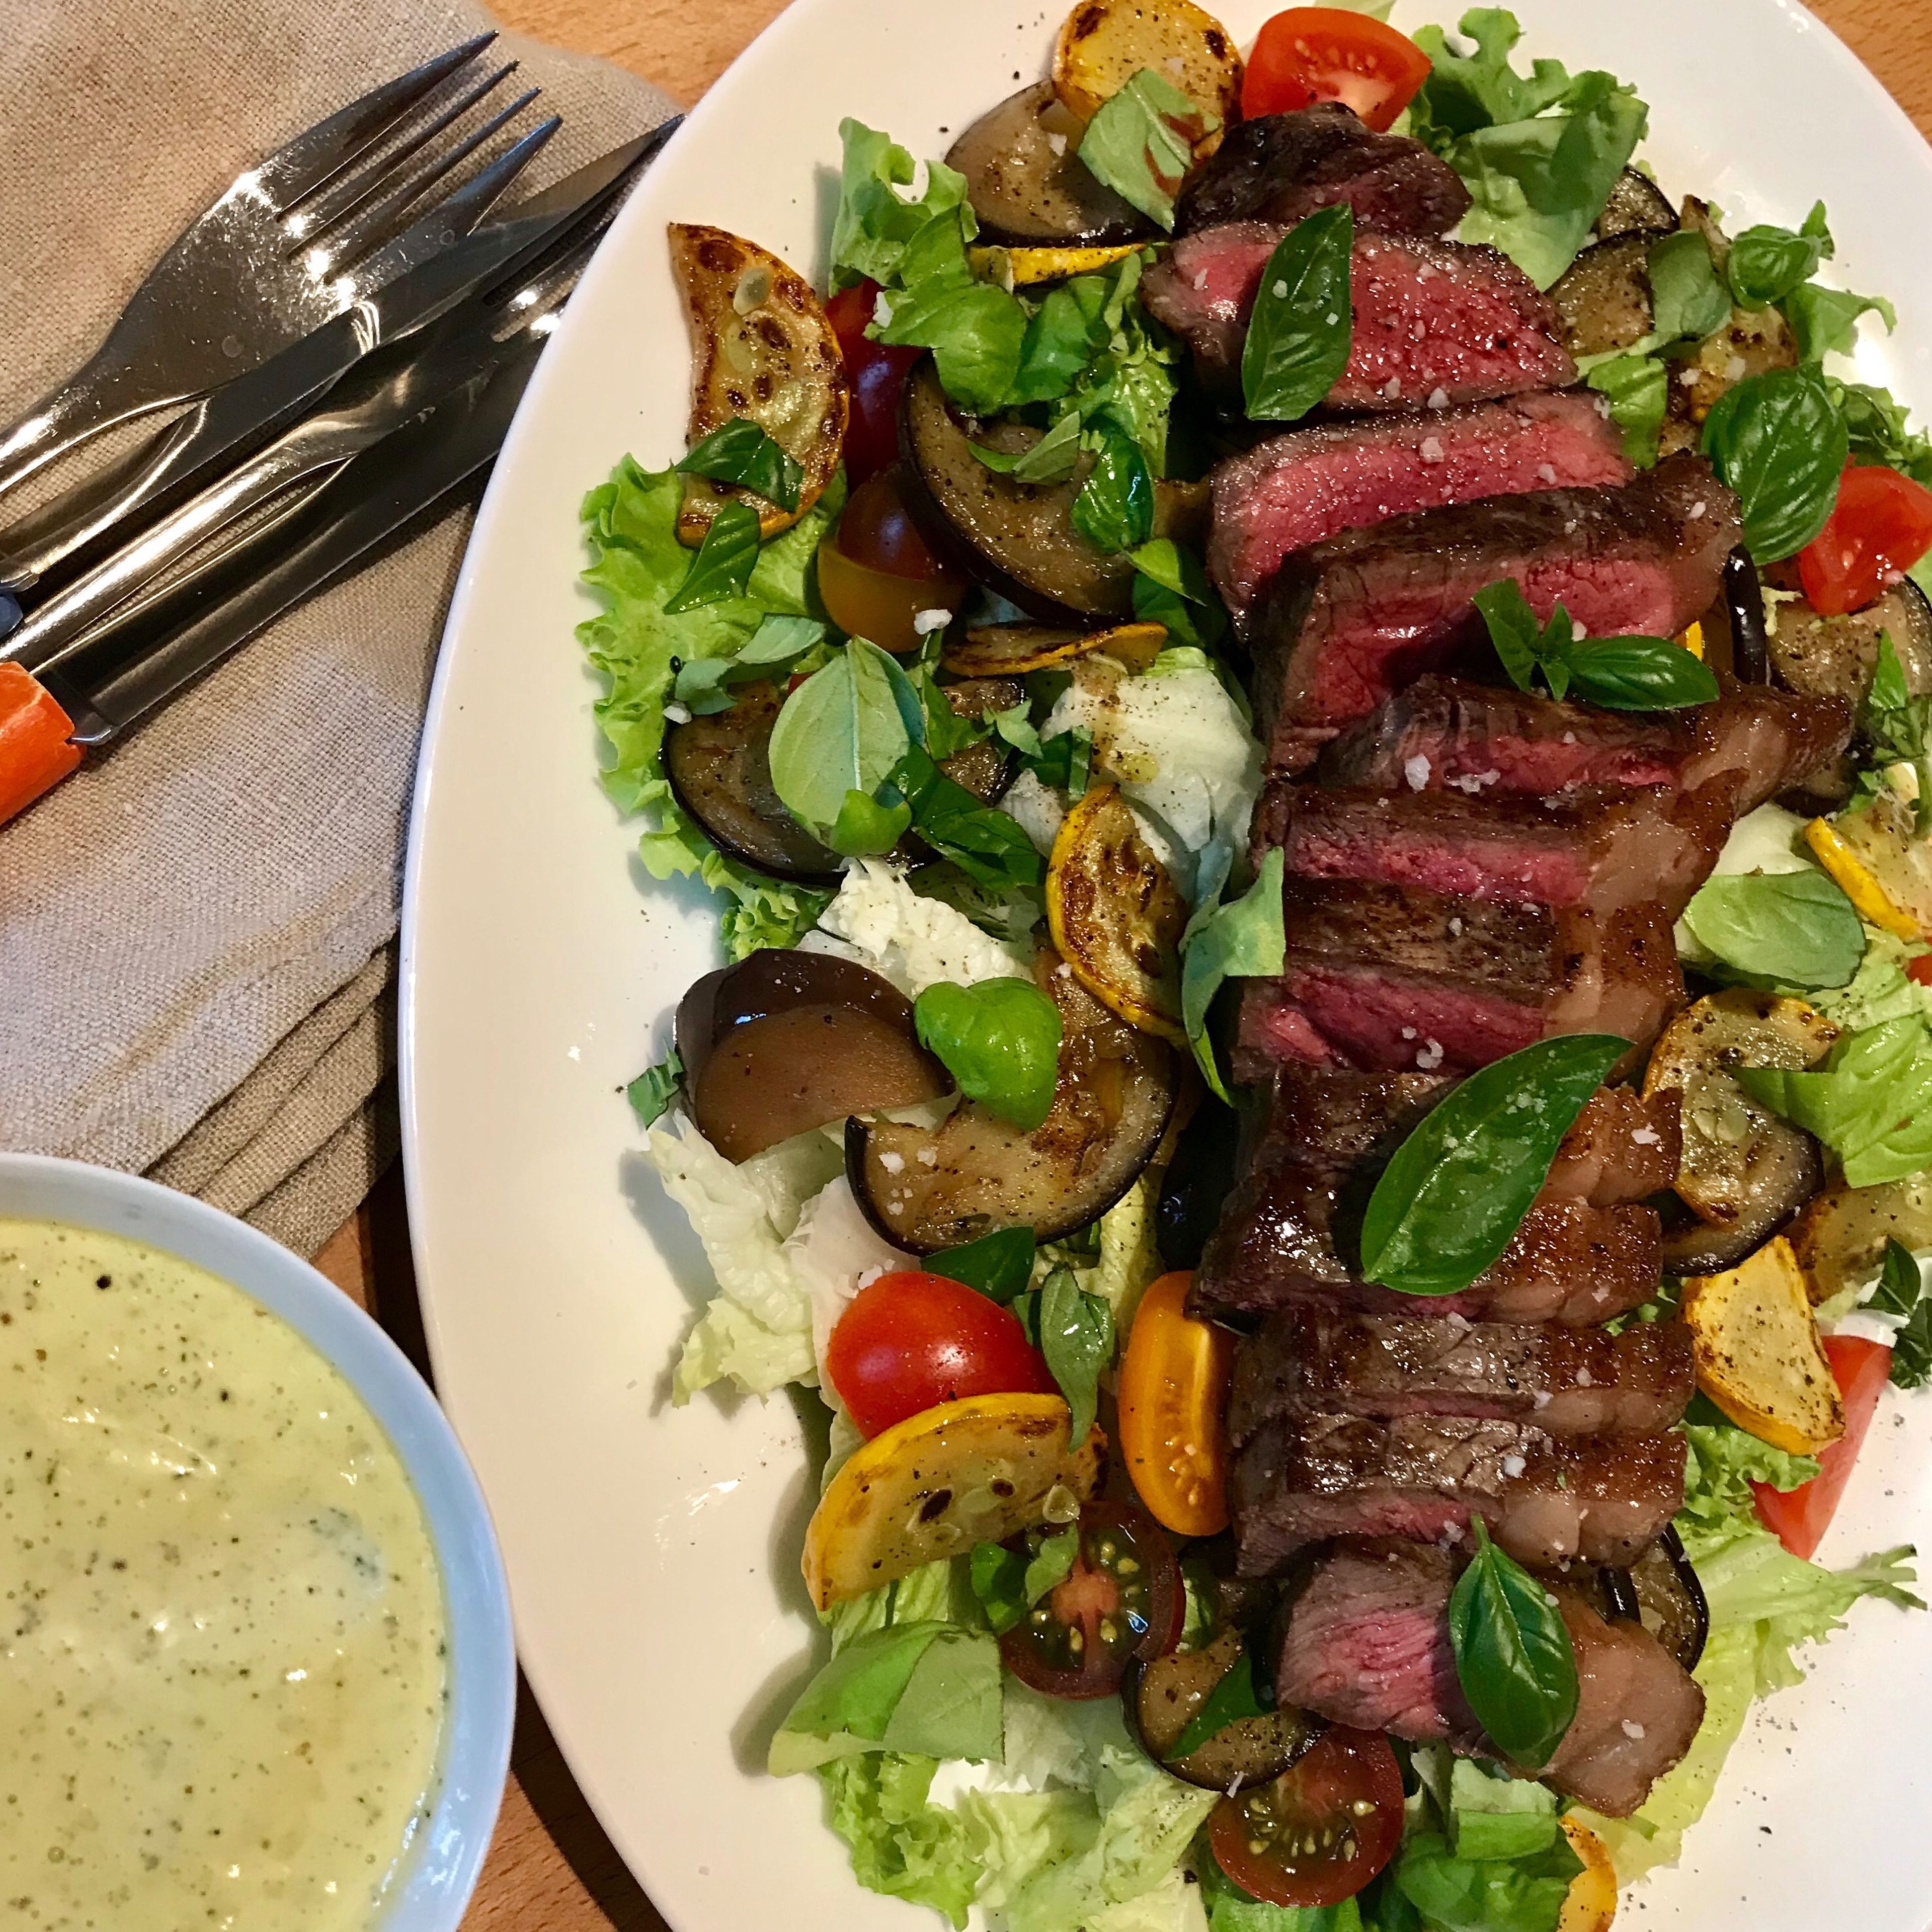 Steak salad with zucchini, eggplant, and tarragon aioli